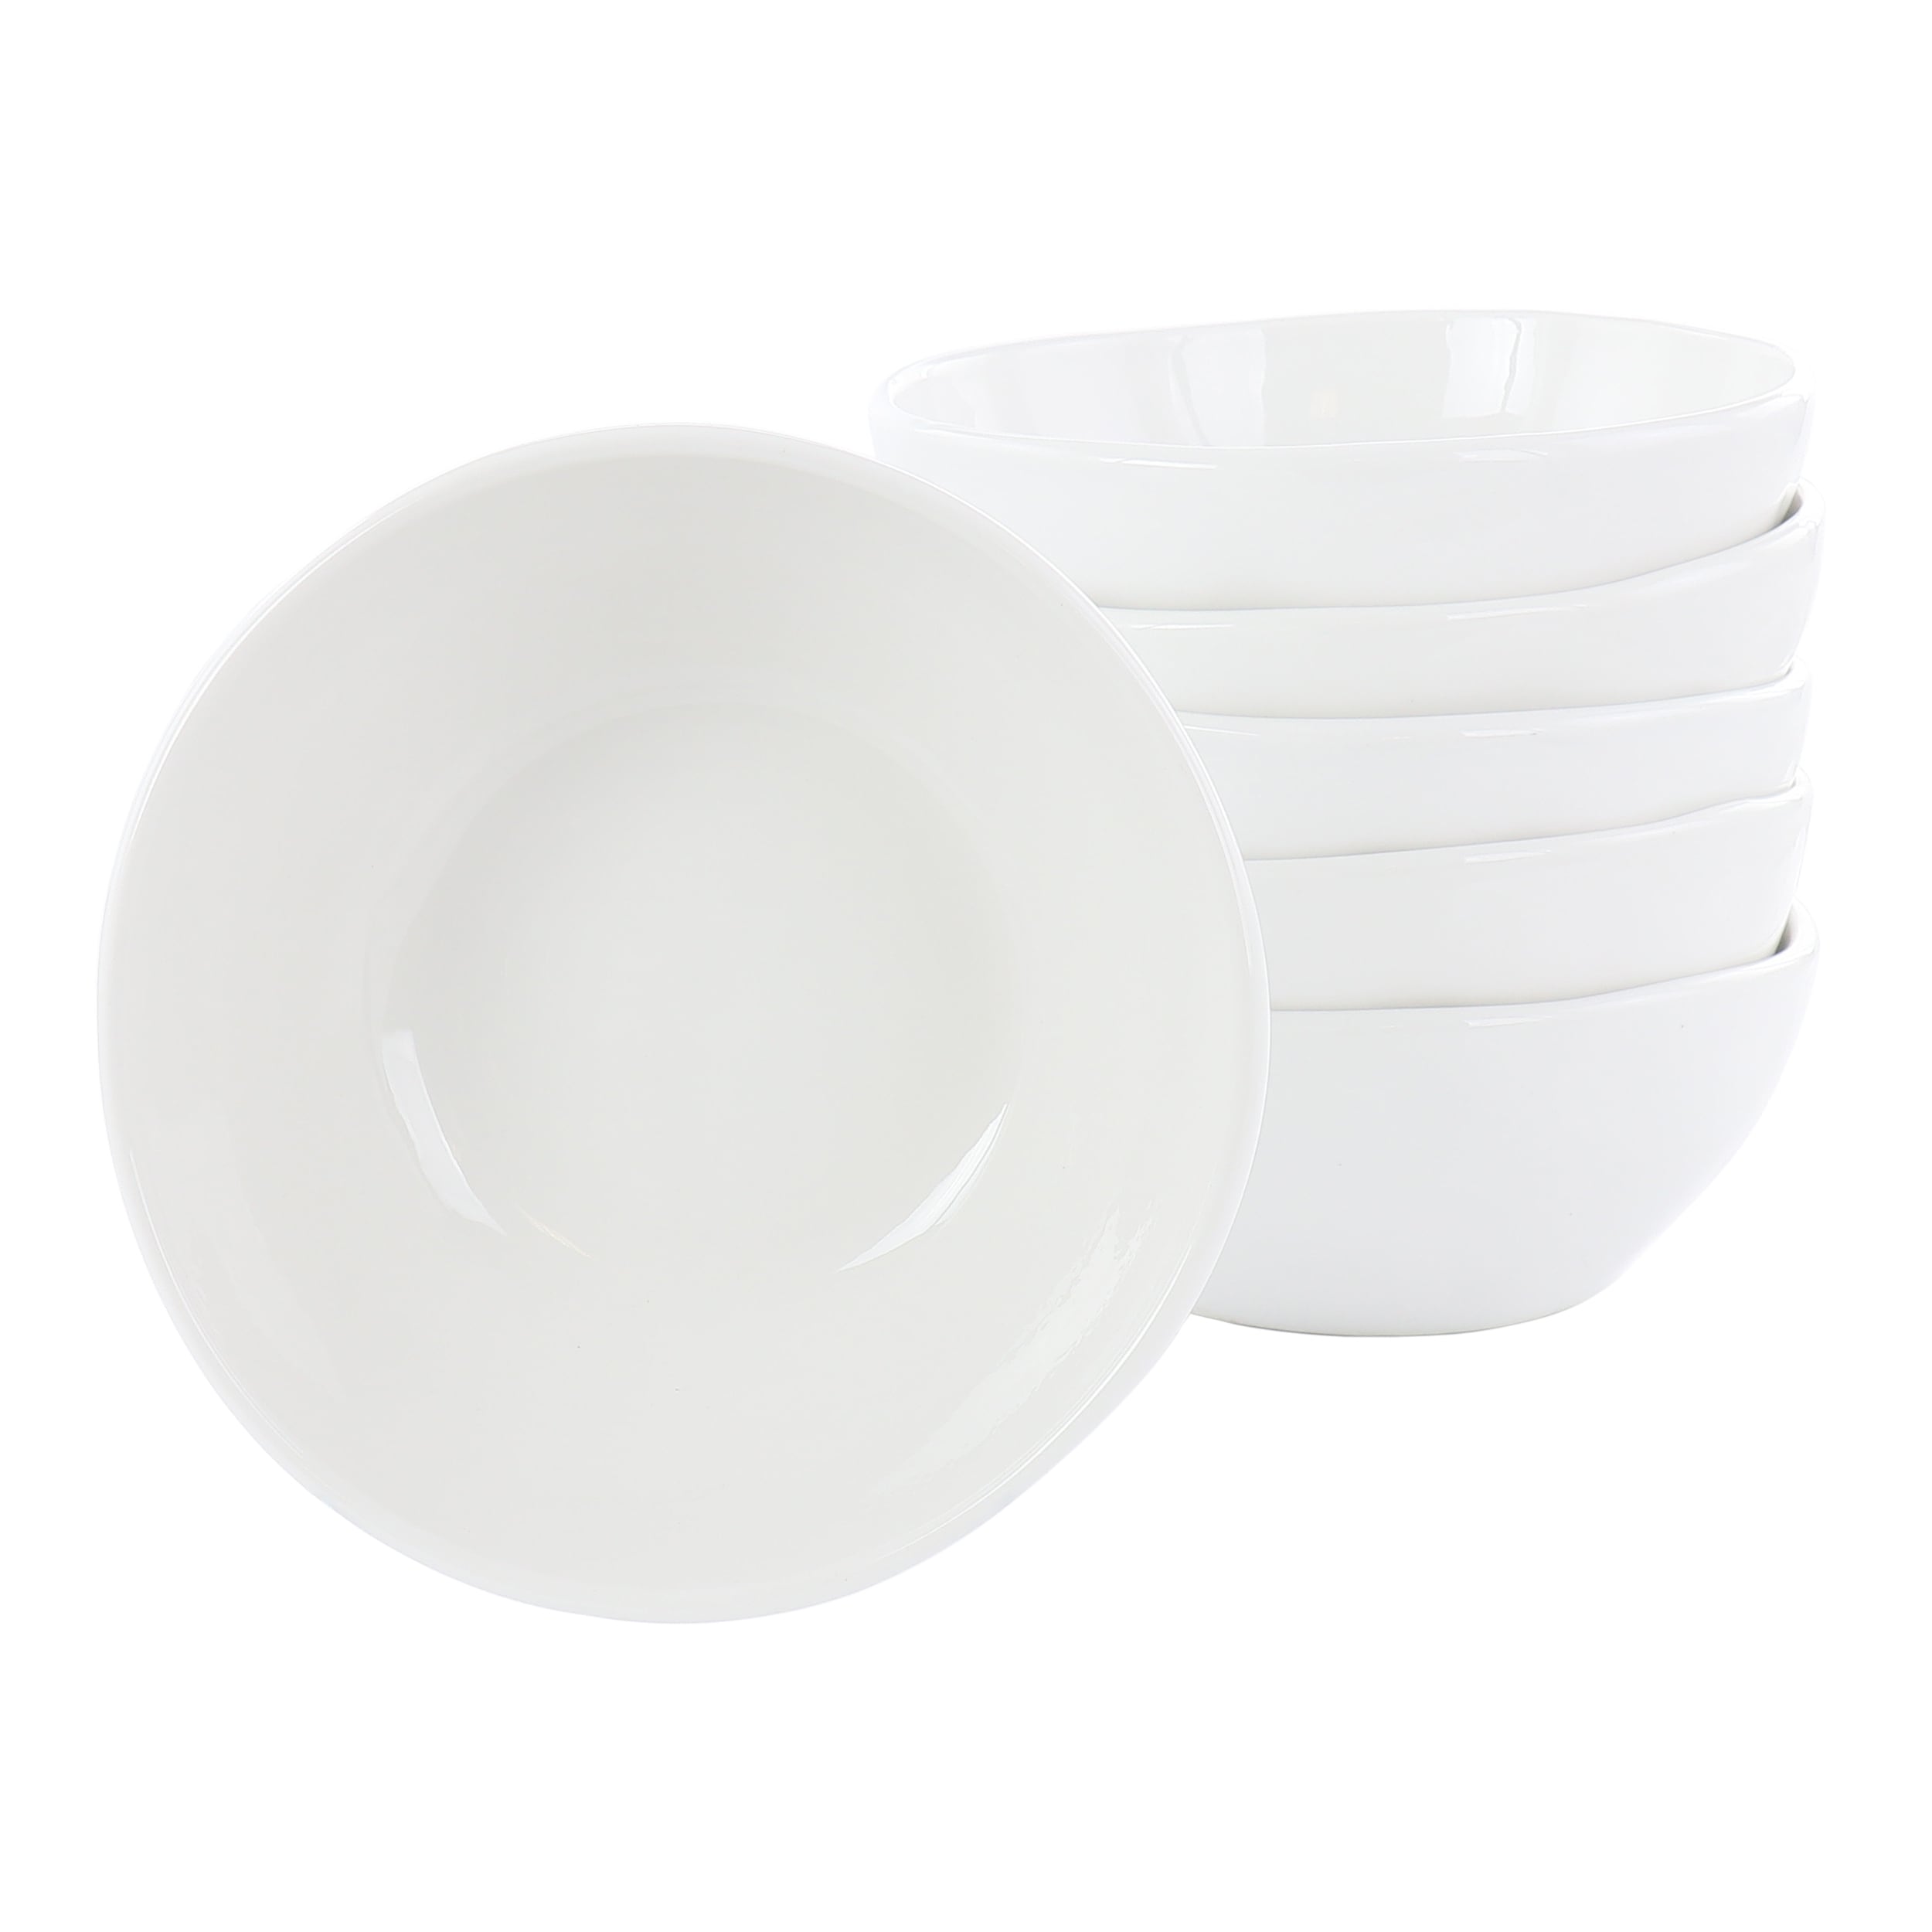 Organic Porcelain Cereal Bowl Sets